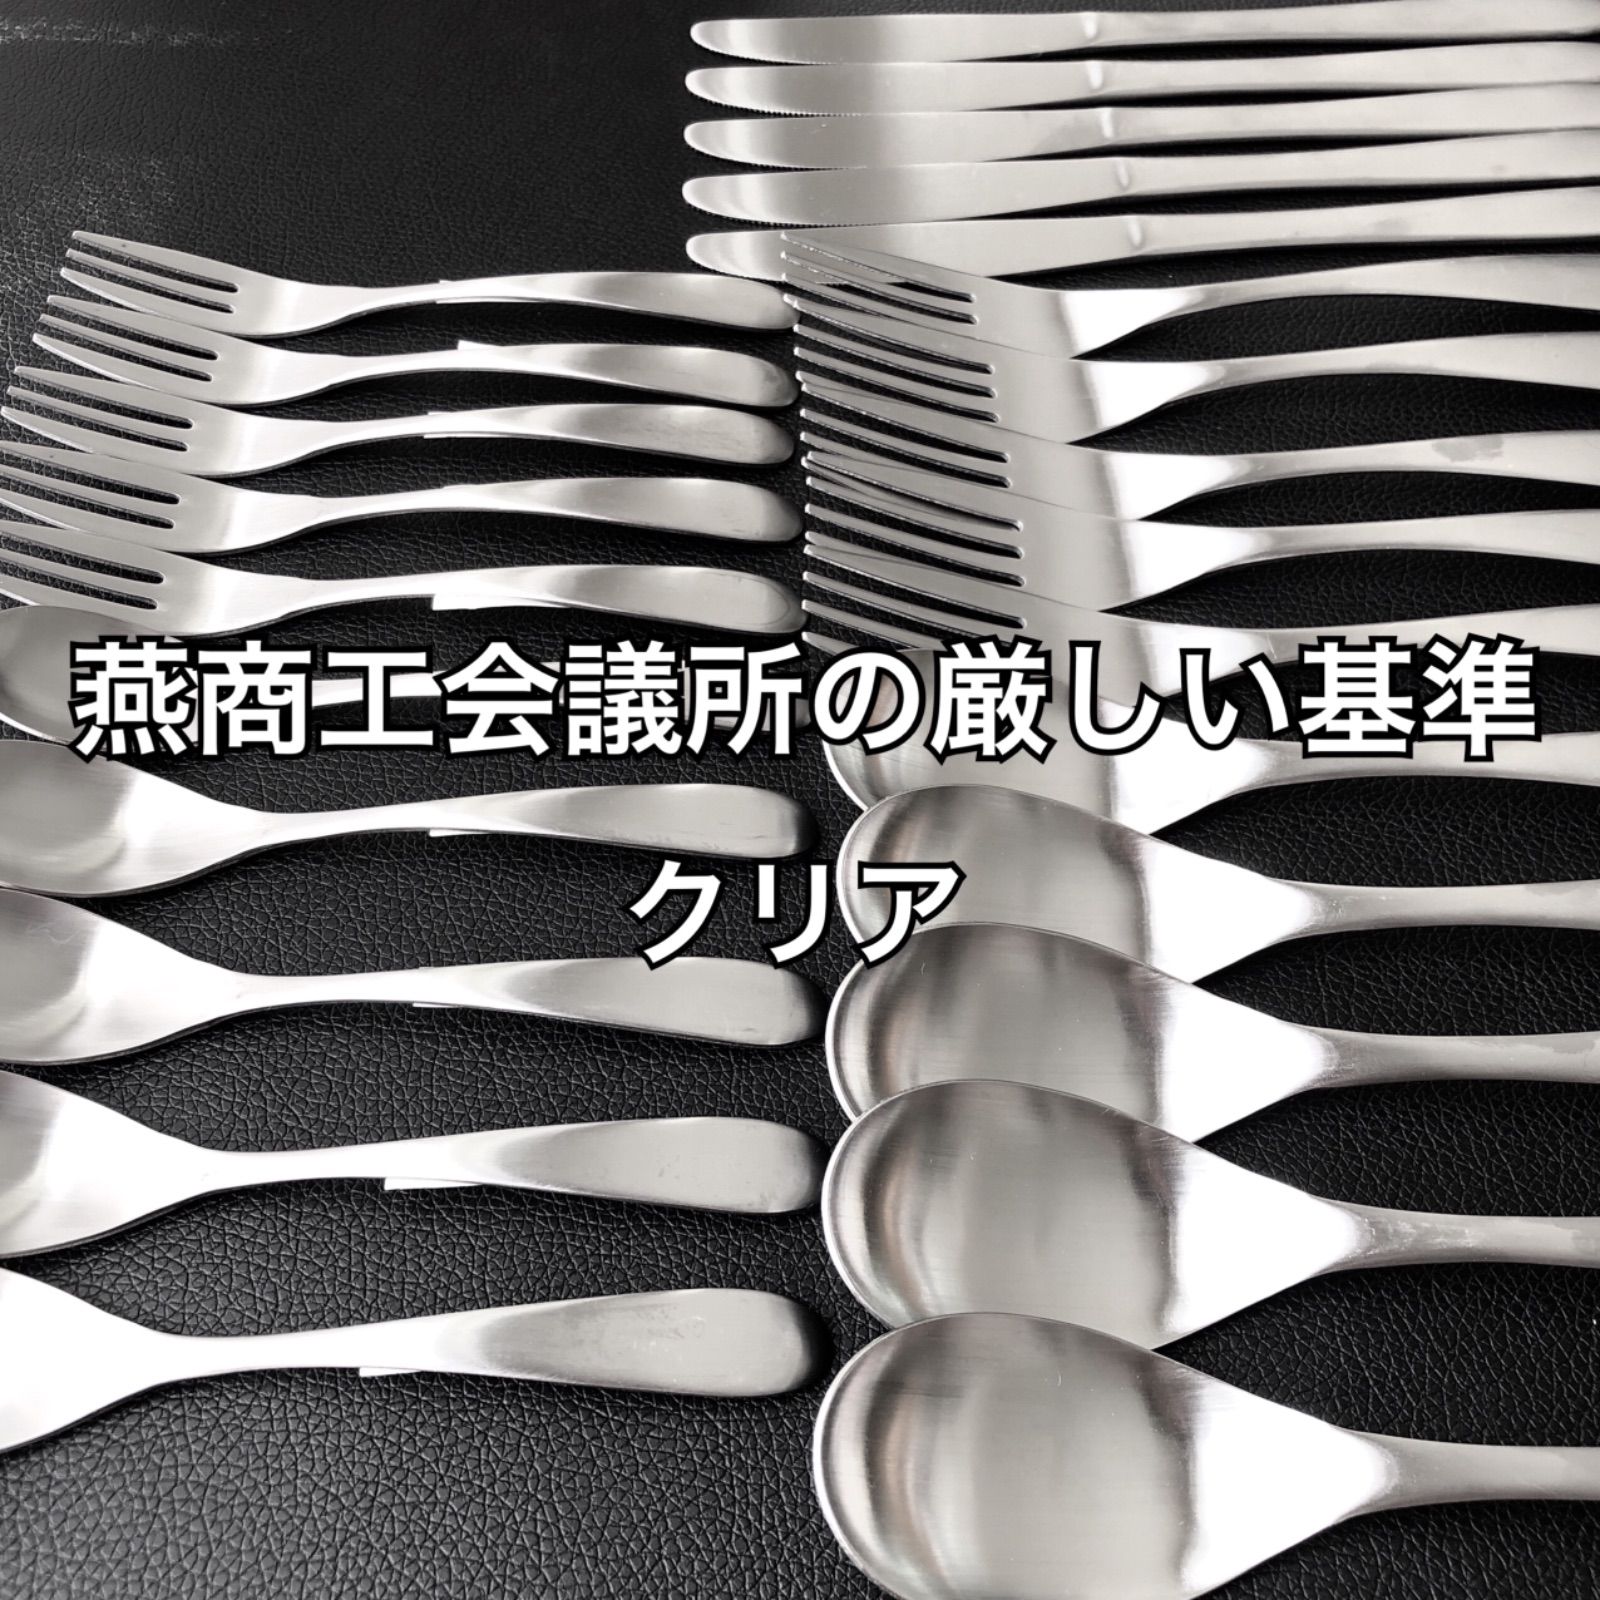 オア21の磁器スプーンはコチラ上質を普段使いに！ 燕三条 最安値 カトラリーセット スプーン フォーク ナイフ